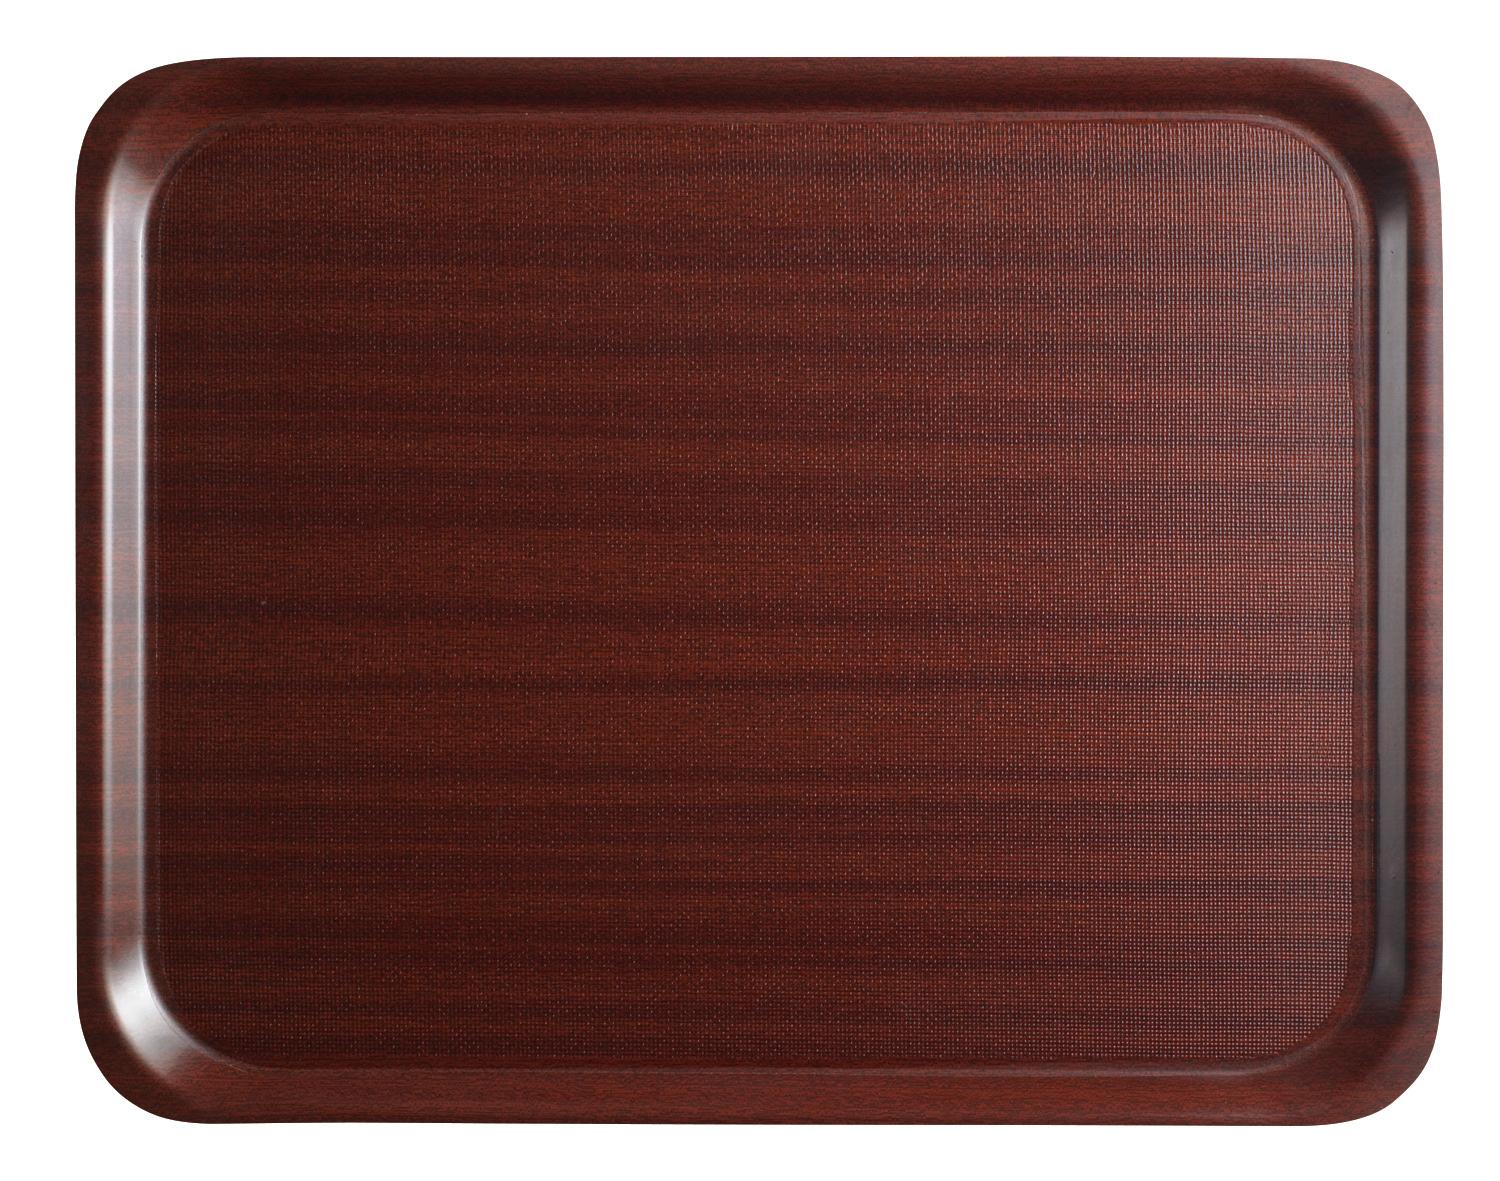 Mykonos laminate tray, rectangular with non-slip surface, mahogany, 430x610 mm